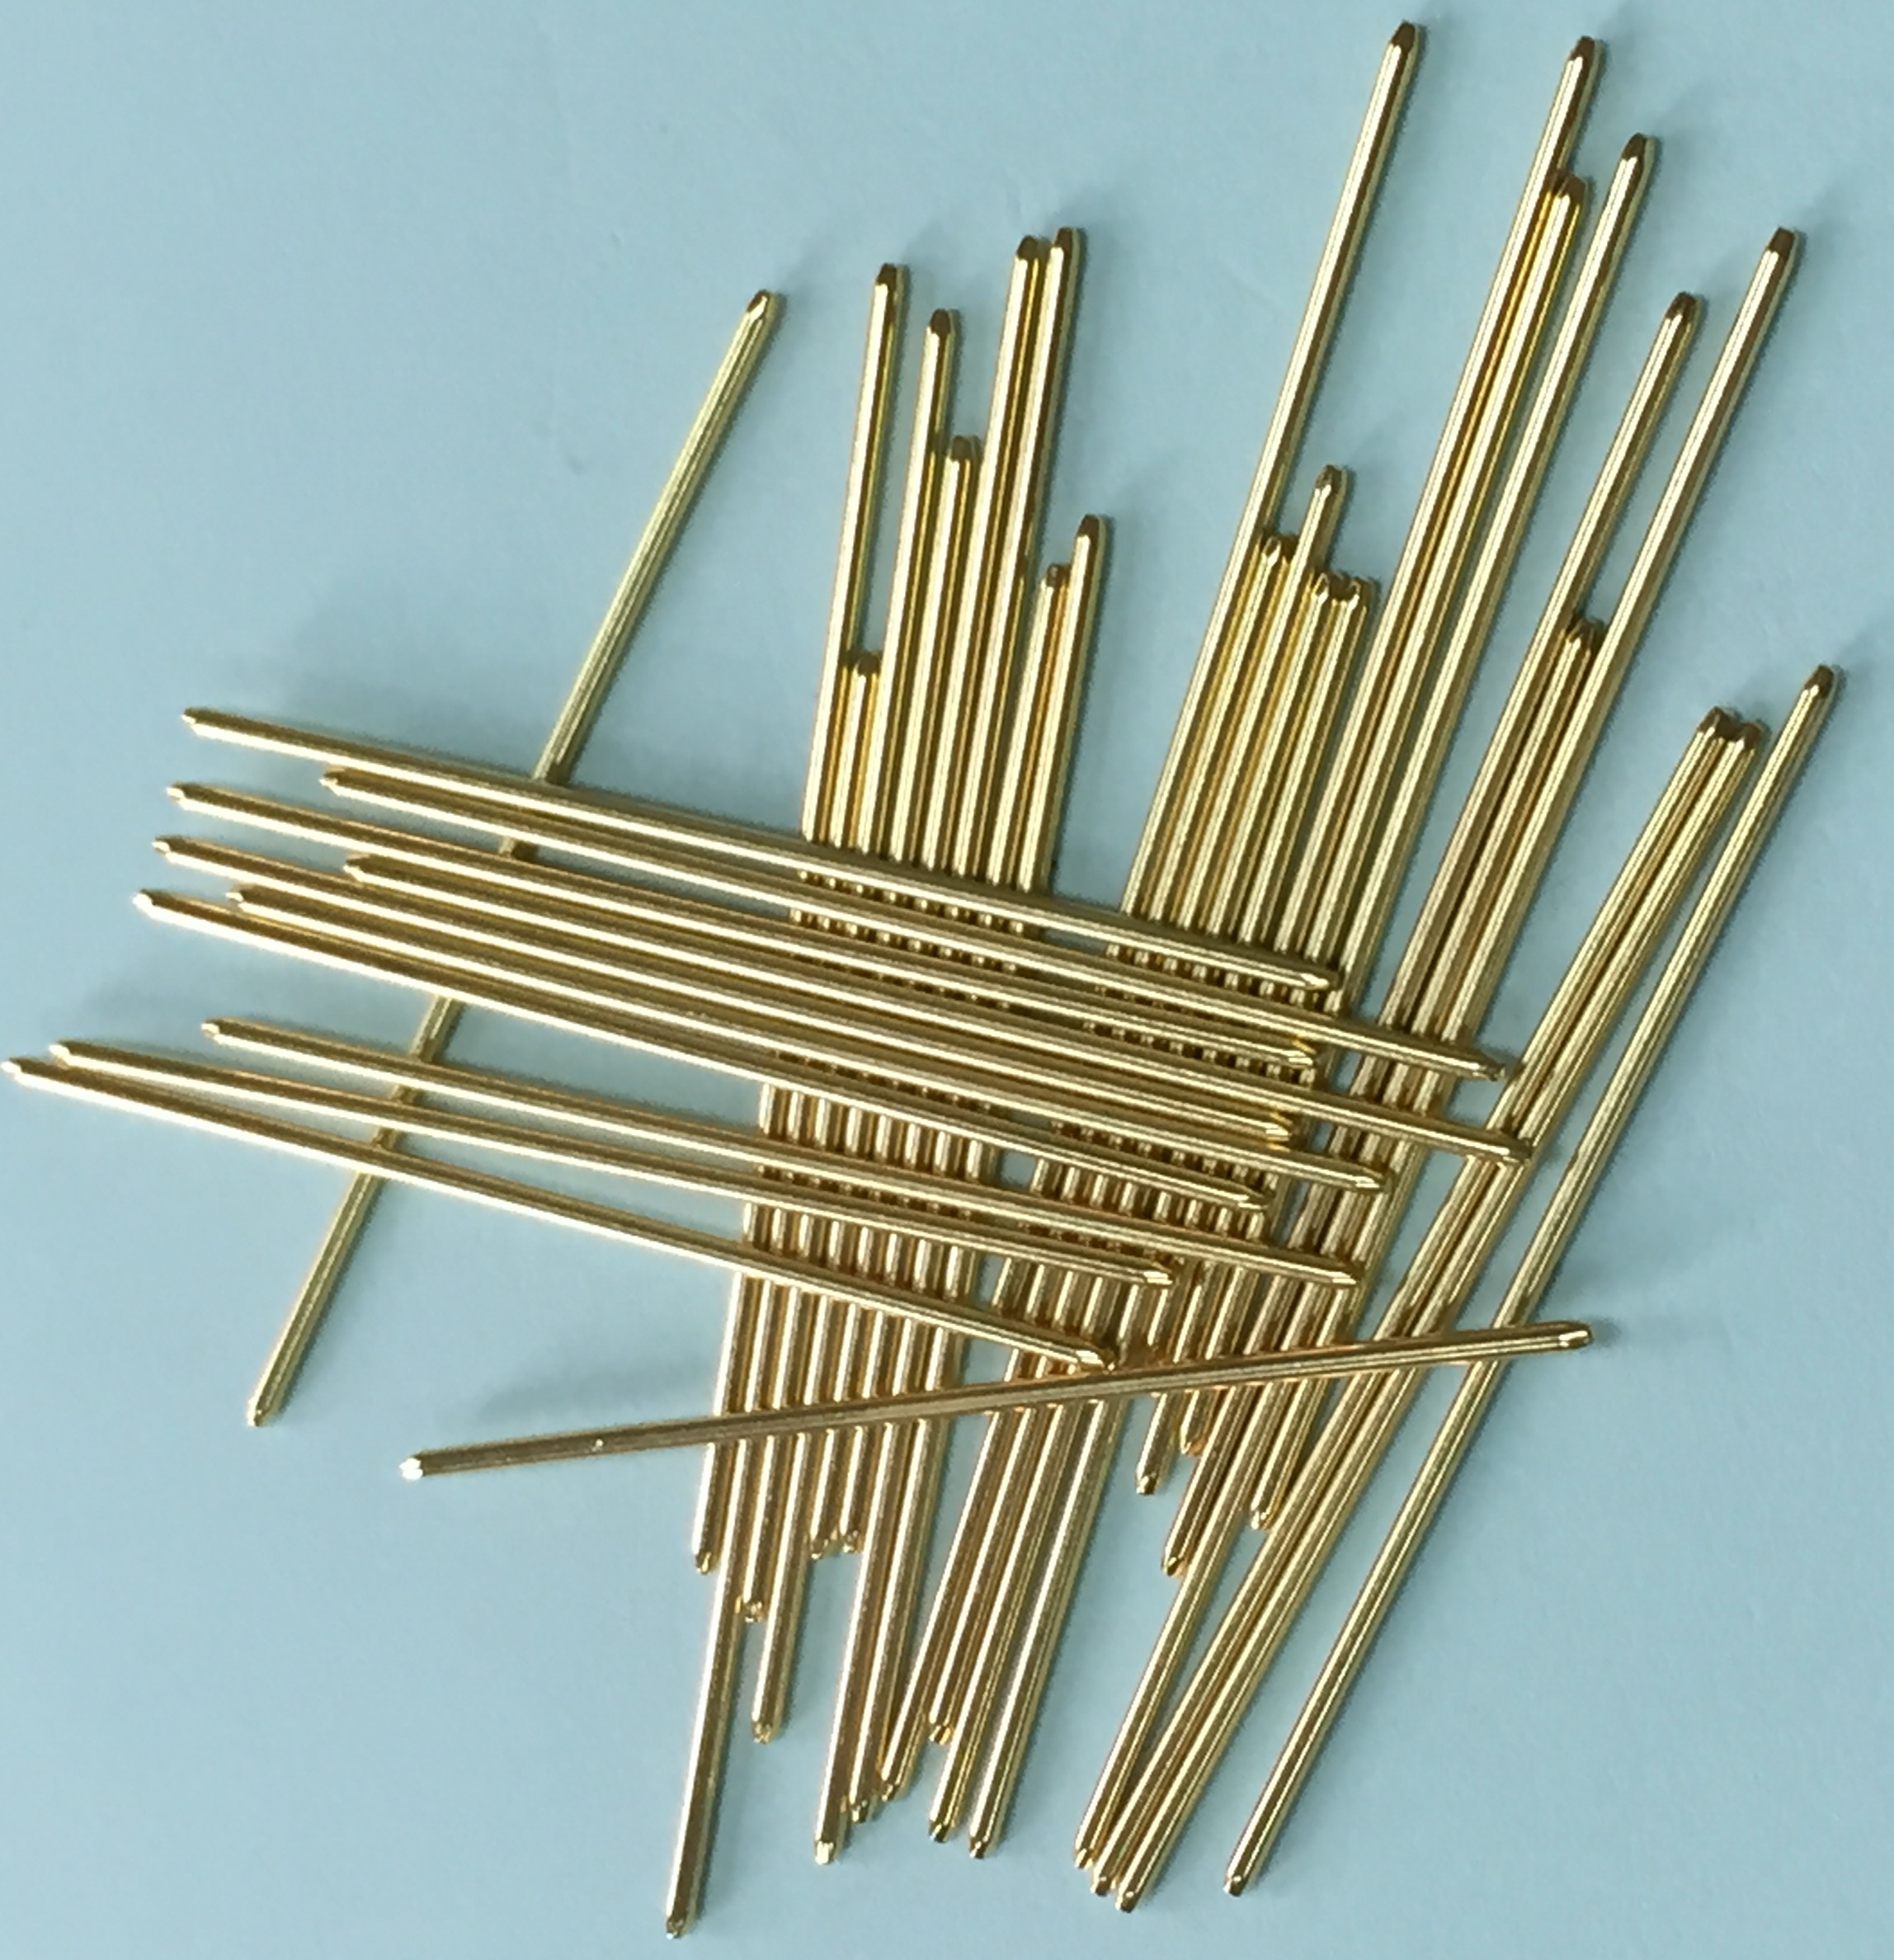 重庆pin针生产厂家Ipin针厂家价格Ipin针加工厂